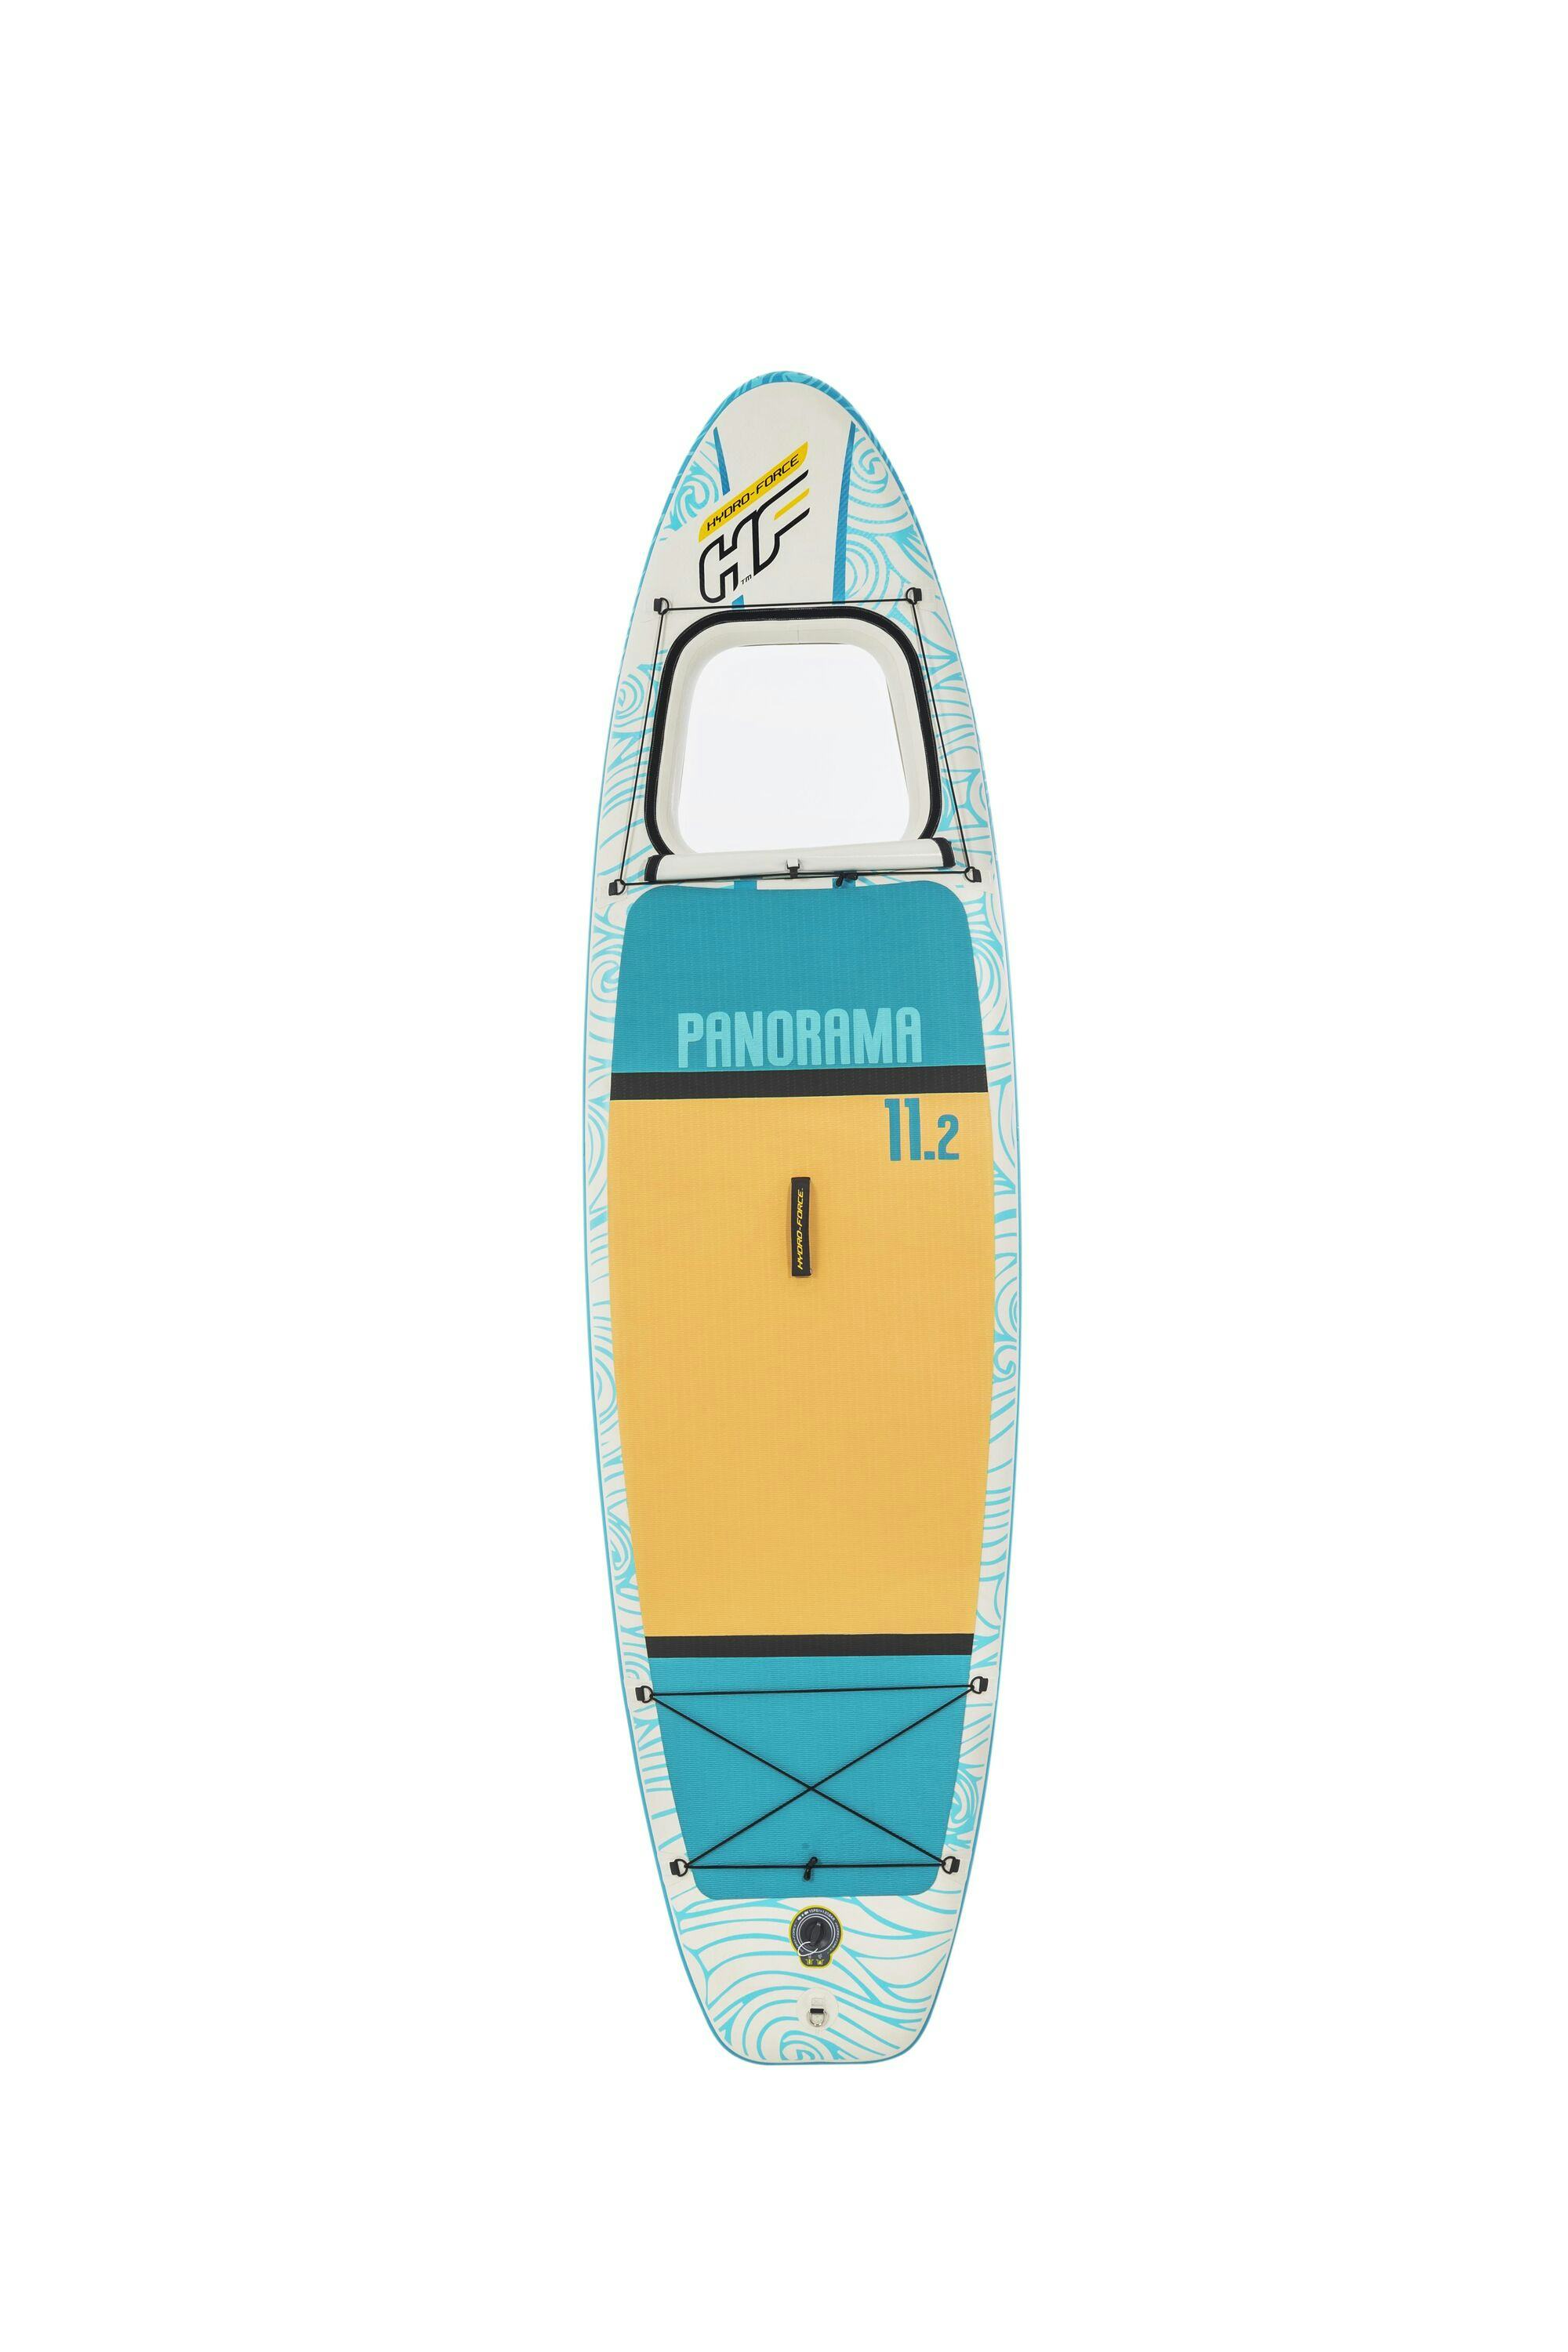 Sports d'eau Paddle gonflable Panorama Hydro-force™, 340 x 89 x 15 cm, 150 kg max, fenêtre transparente, poignées de transport, pompe, leash, sac de transport et pagaie Bestway 2